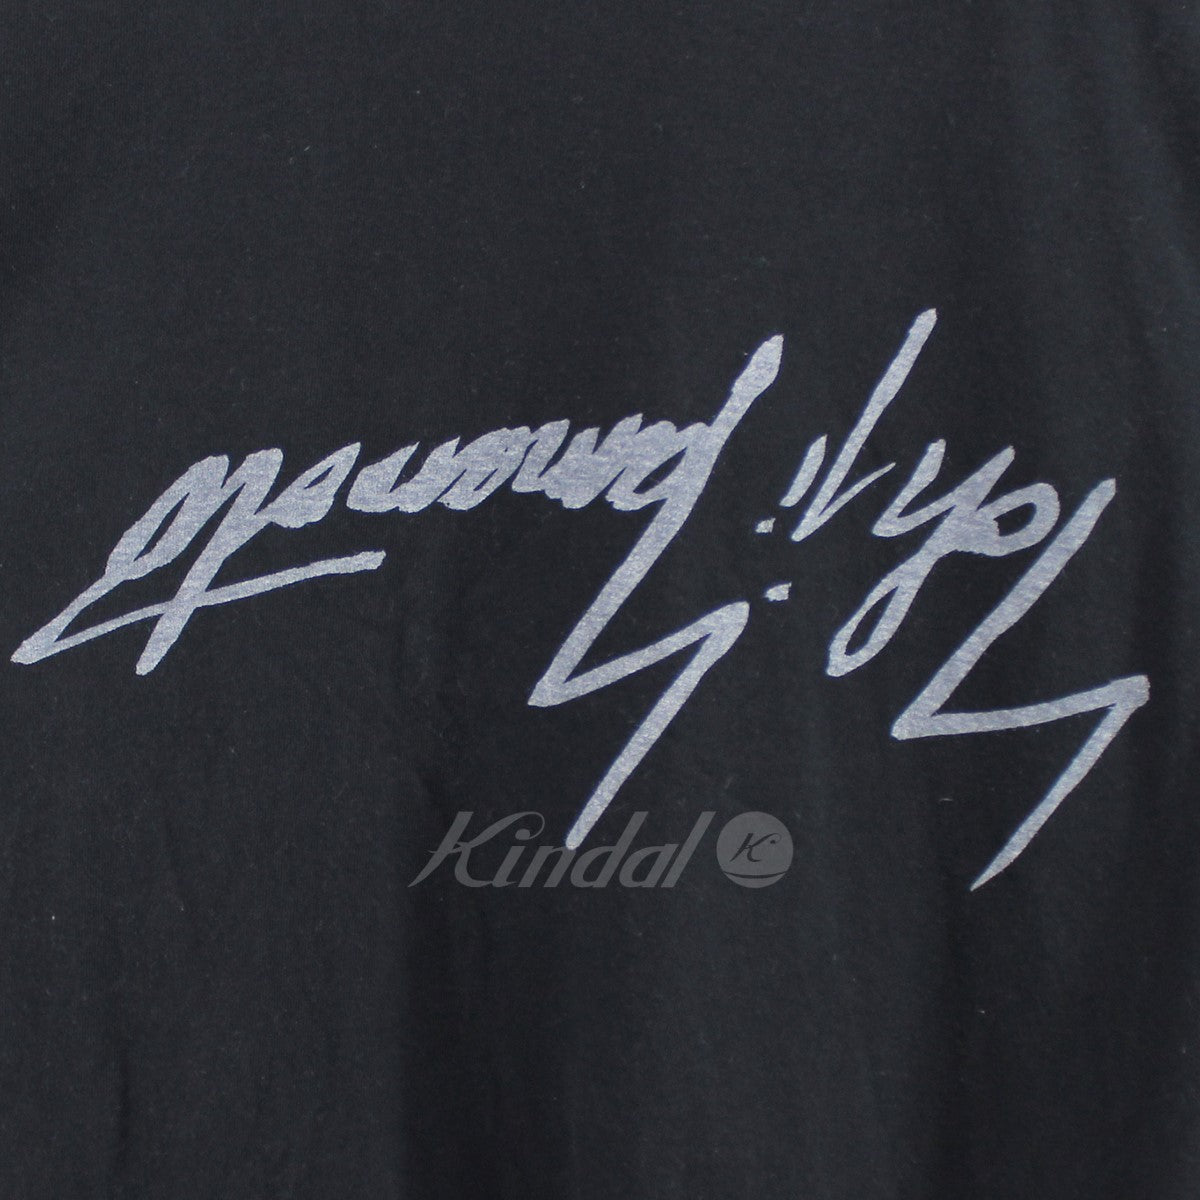 Ground Y (Yohji Yamamoto) 反転 ロゴ Tシャツ GD-T32-070 ブラック ...